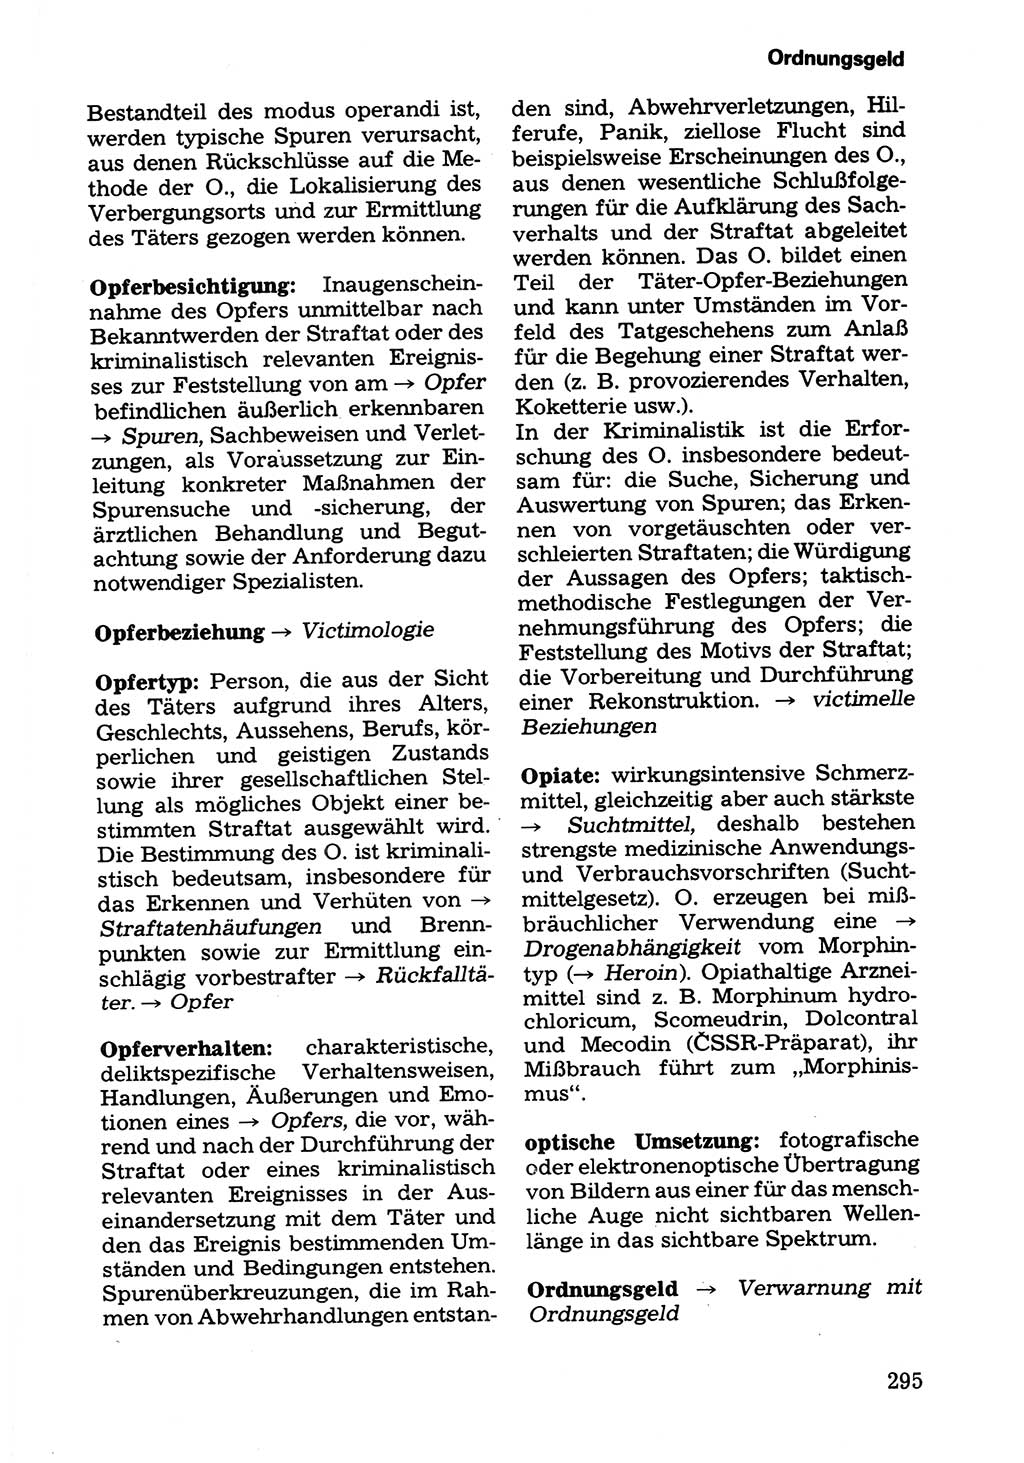 Wörterbuch der sozialistischen Kriminalistik [Deutsche Demokratische Republik (DDR)] 1981, Seite 295 (Wb. soz. Krim. DDR 1981, S. 295)